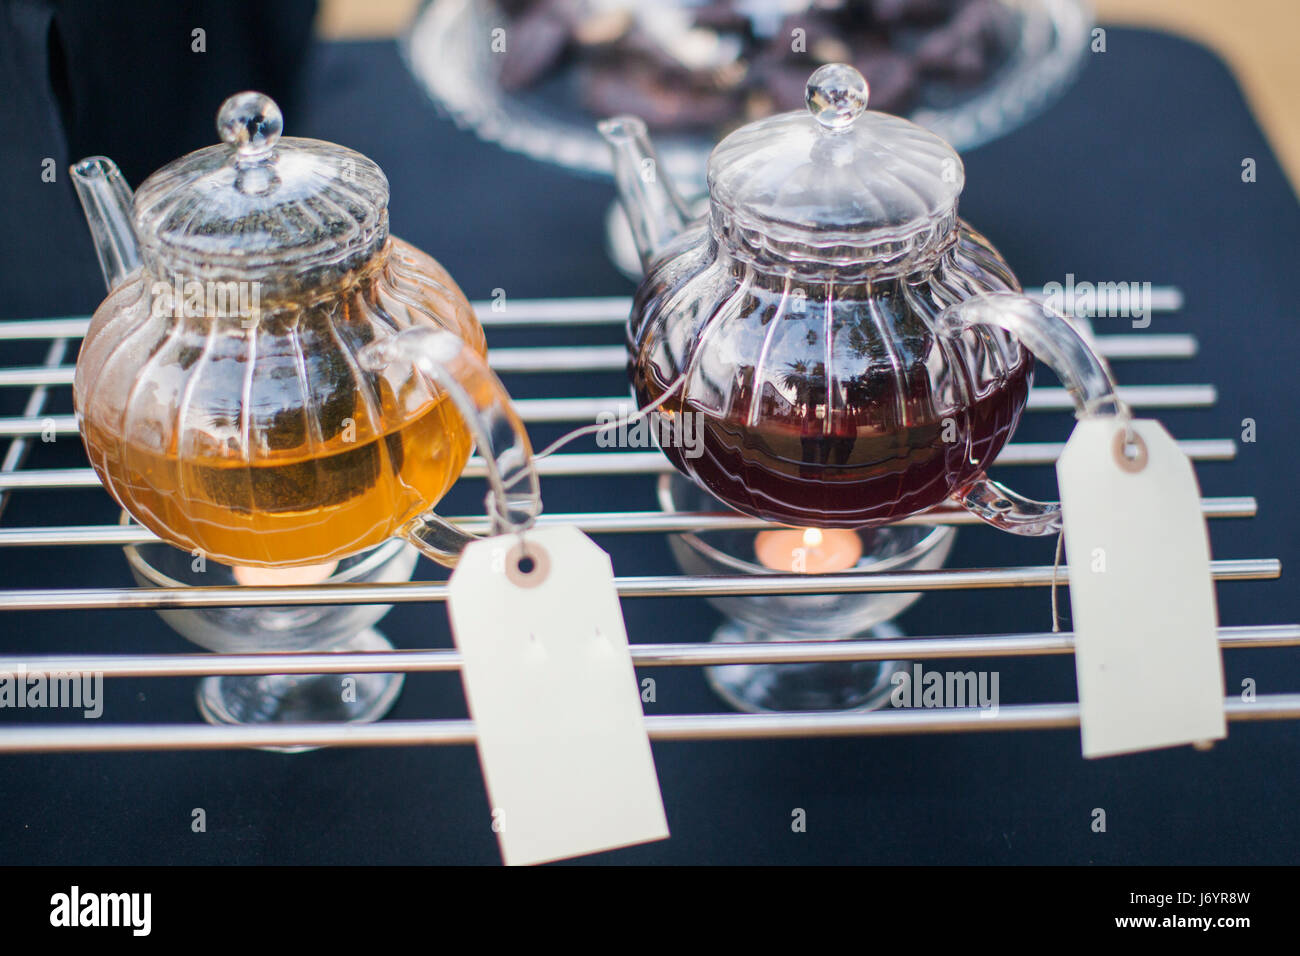 Zwei Teekannen auf Teekanne Stövchen Stockfotografie - Alamy